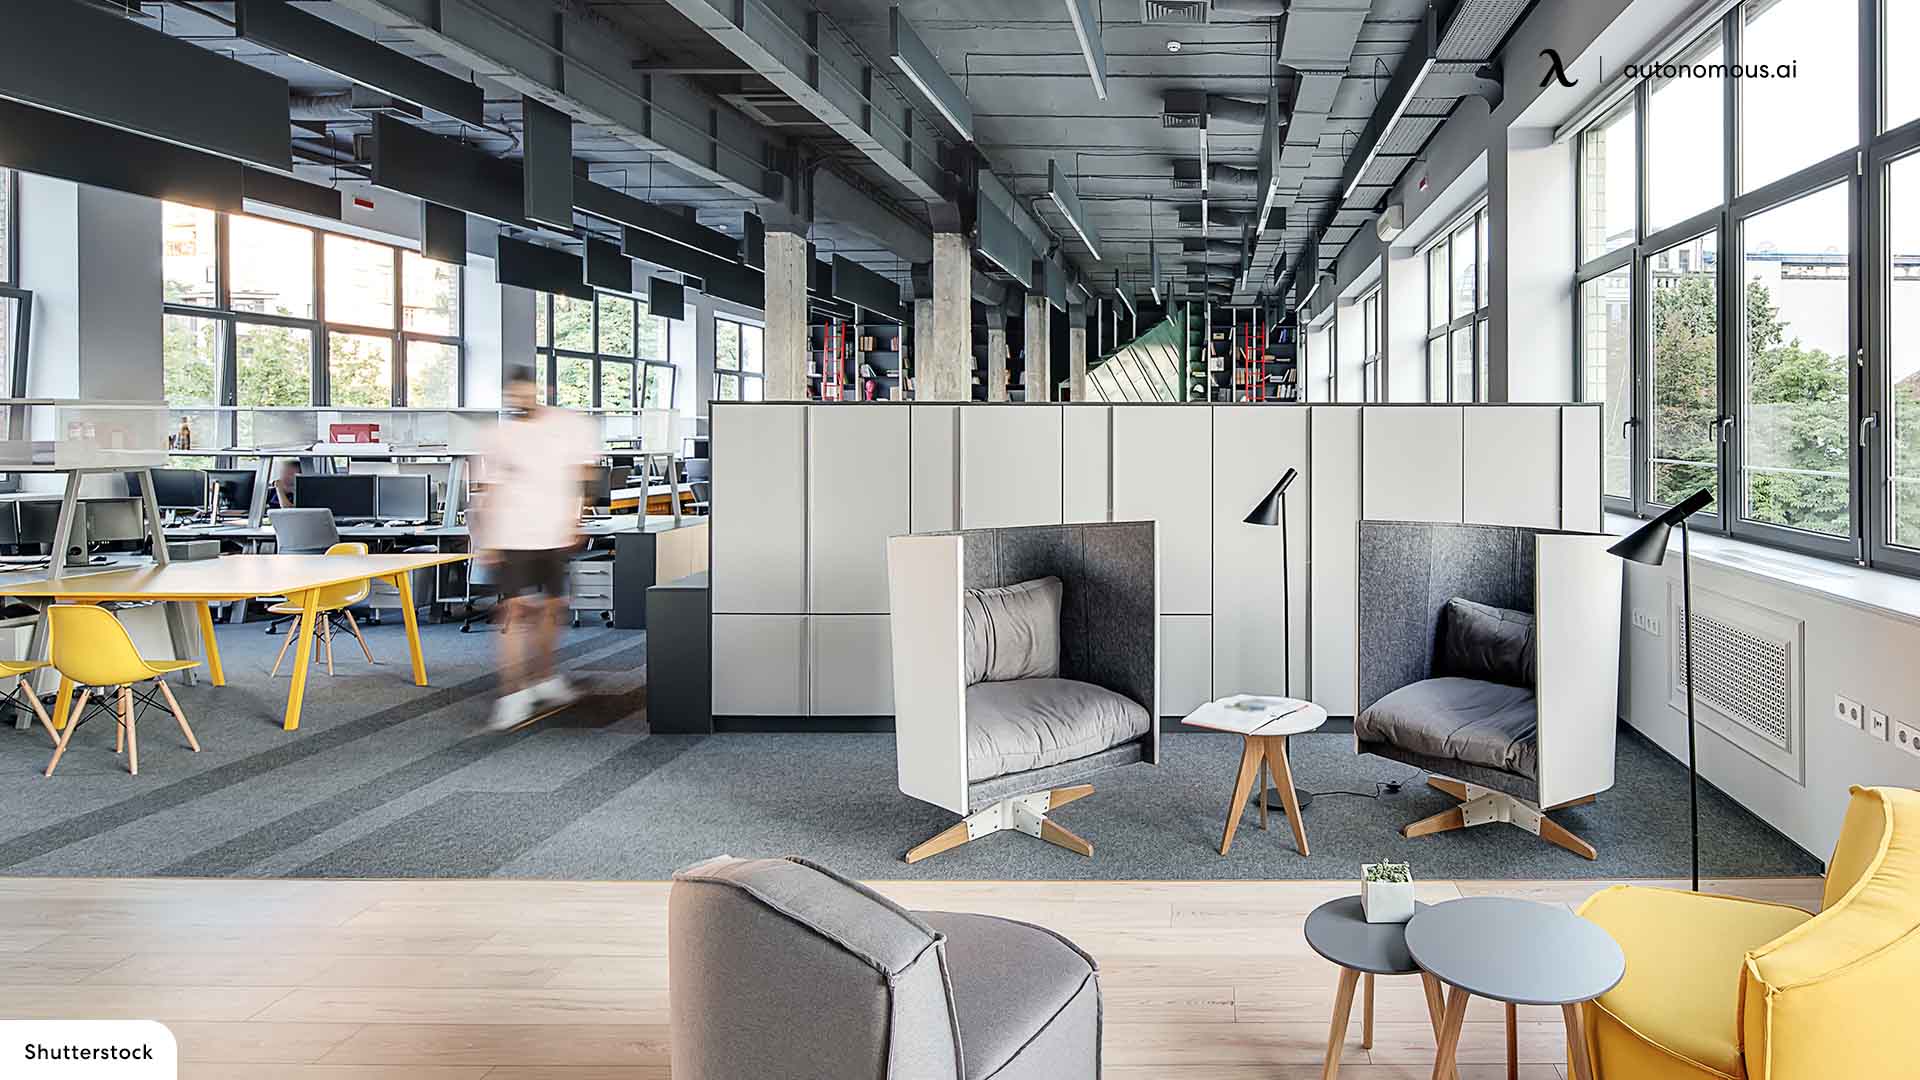 Employee lockers provide an organized workspace